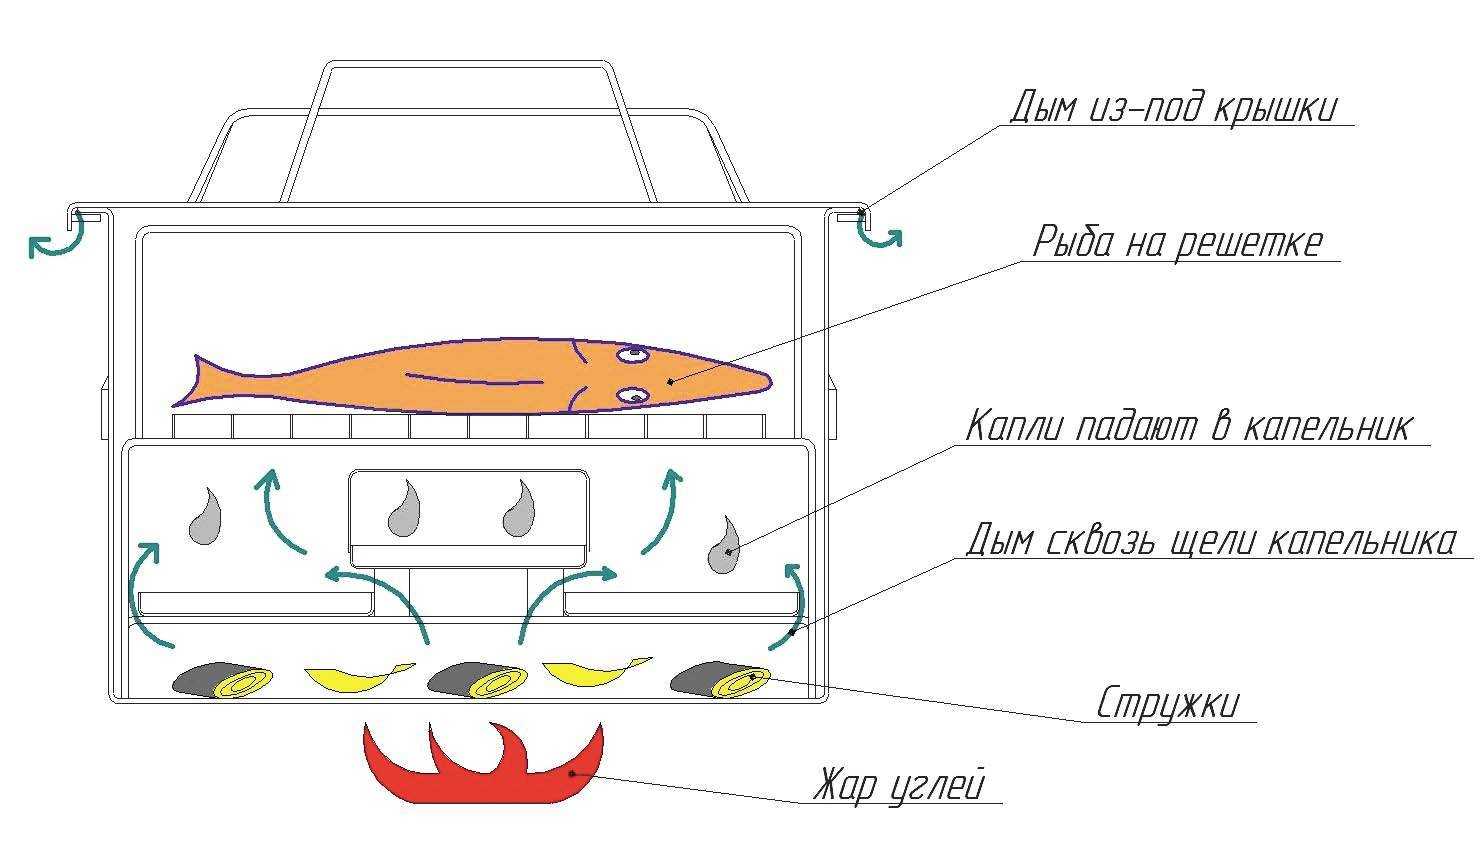 Коптильня горячего копчения своими руками: видео инструкция